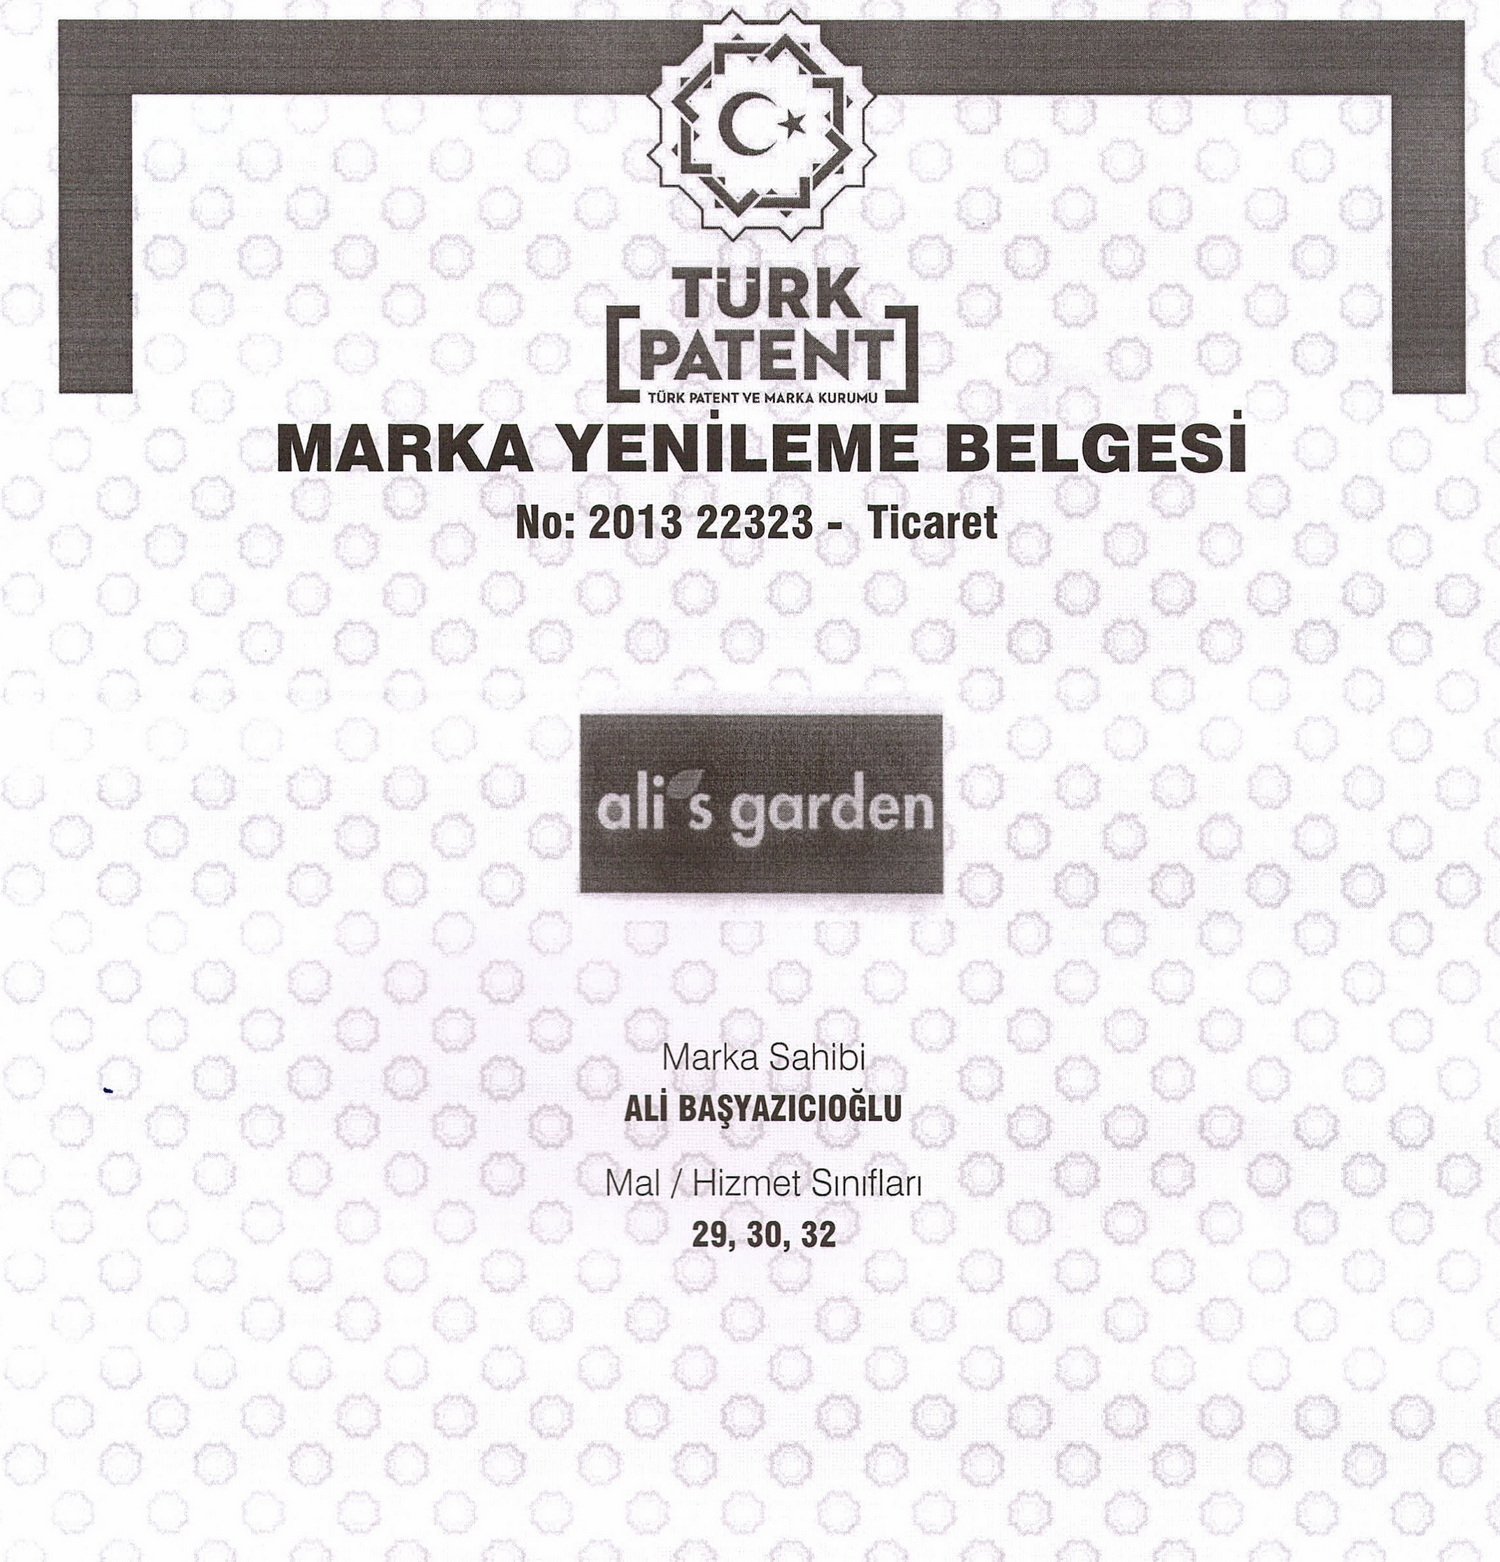 Türk Patent-Marka Yenileme_Belge Geçerlilik Tarihi 11.03.2023 tar.itib.10 yıl.jpg